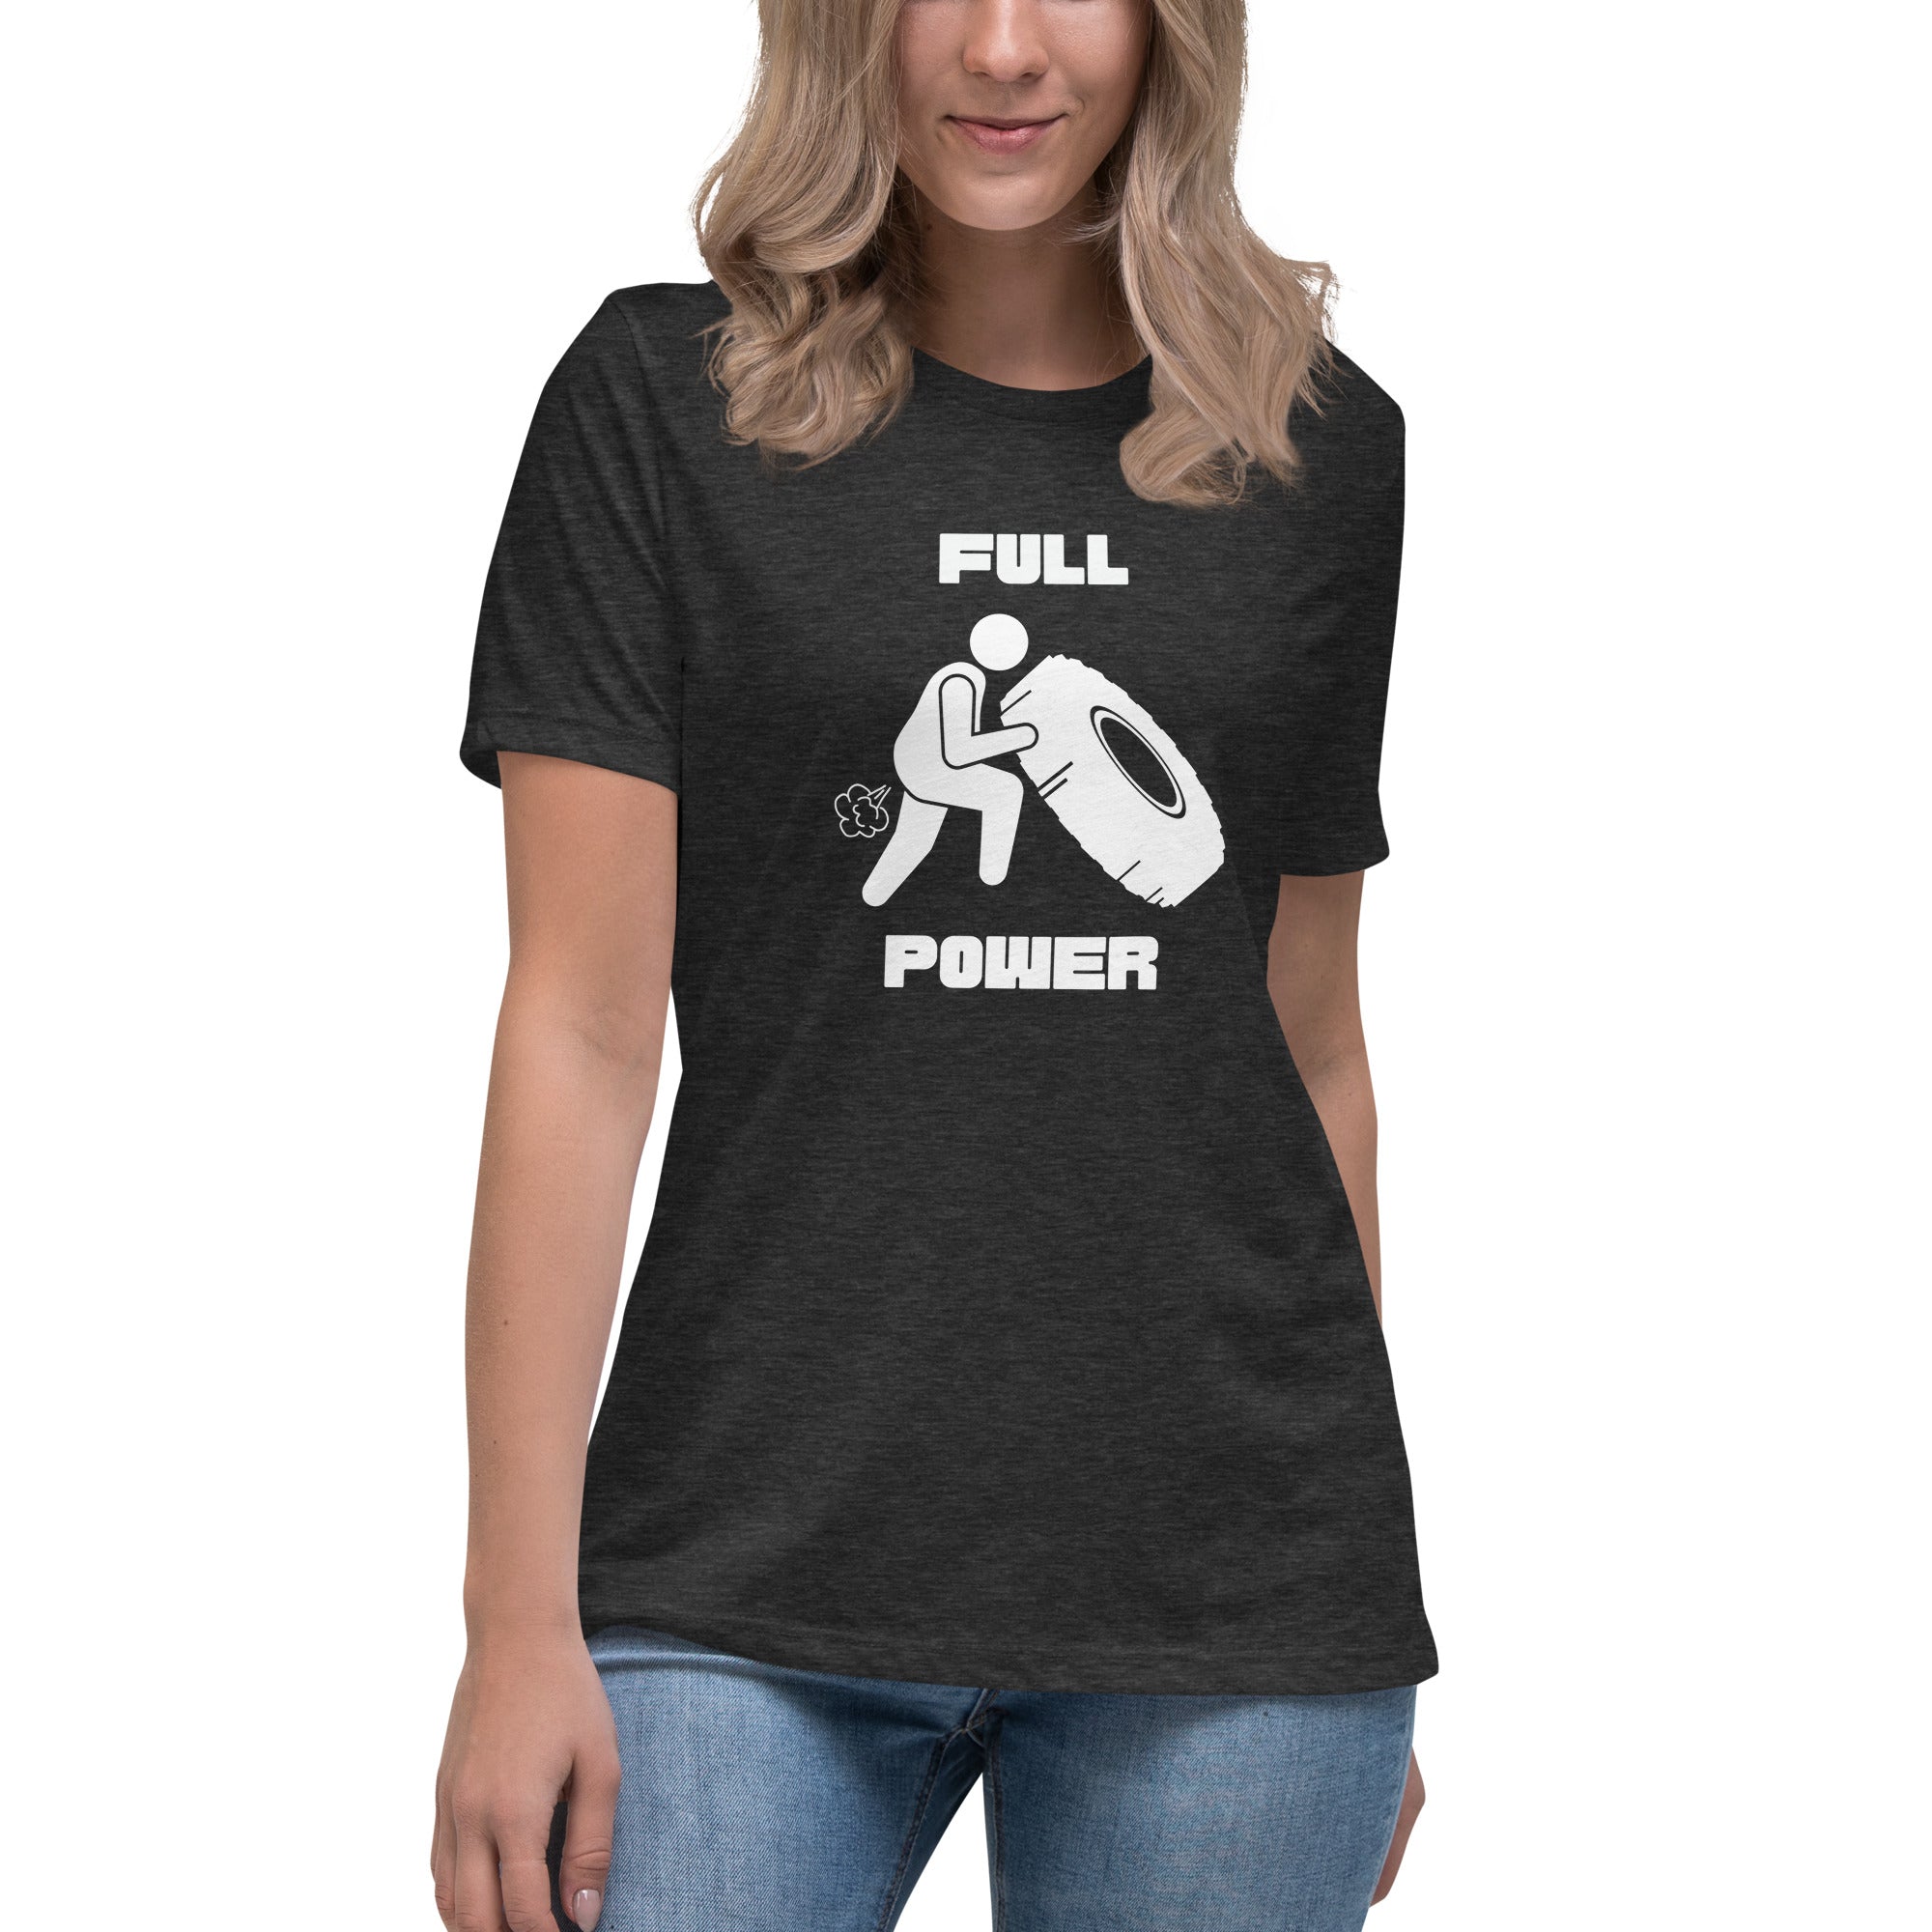 Full Power Women's Premium T-Shirt